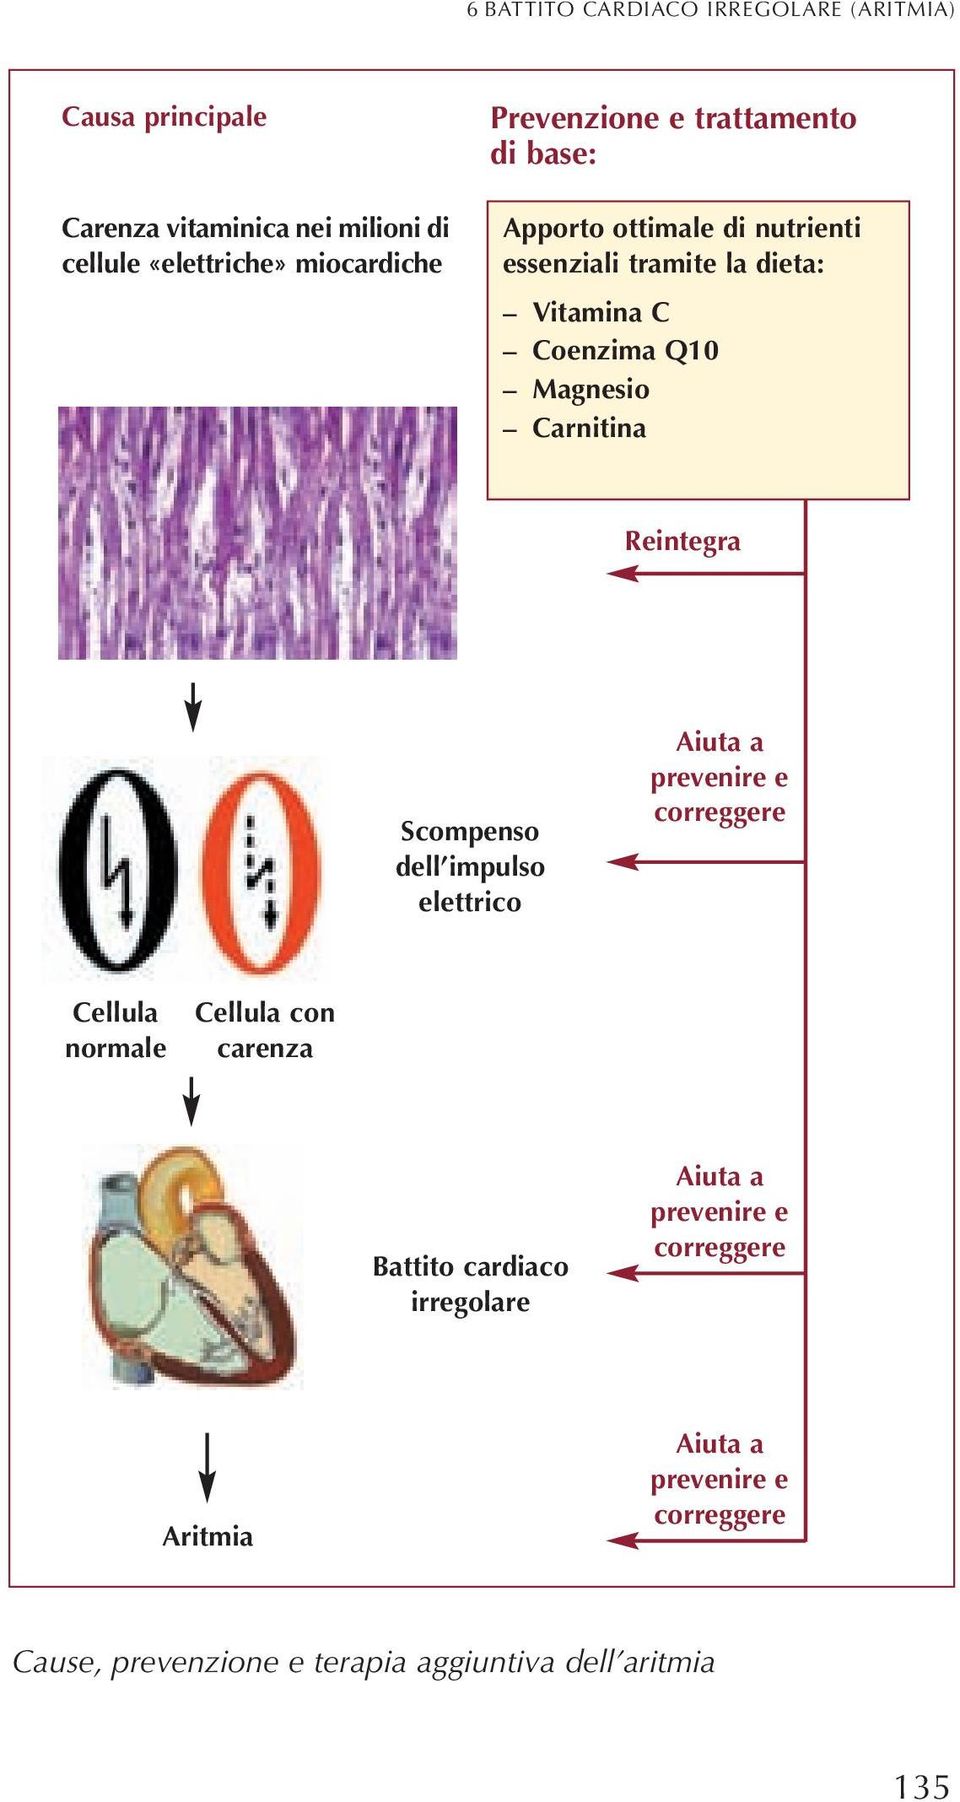 Carnitina Reintegra Scompenso dell impulso elettrico Aiuta a prevenire e correggere Cellula normale Cellula con carenza Battito